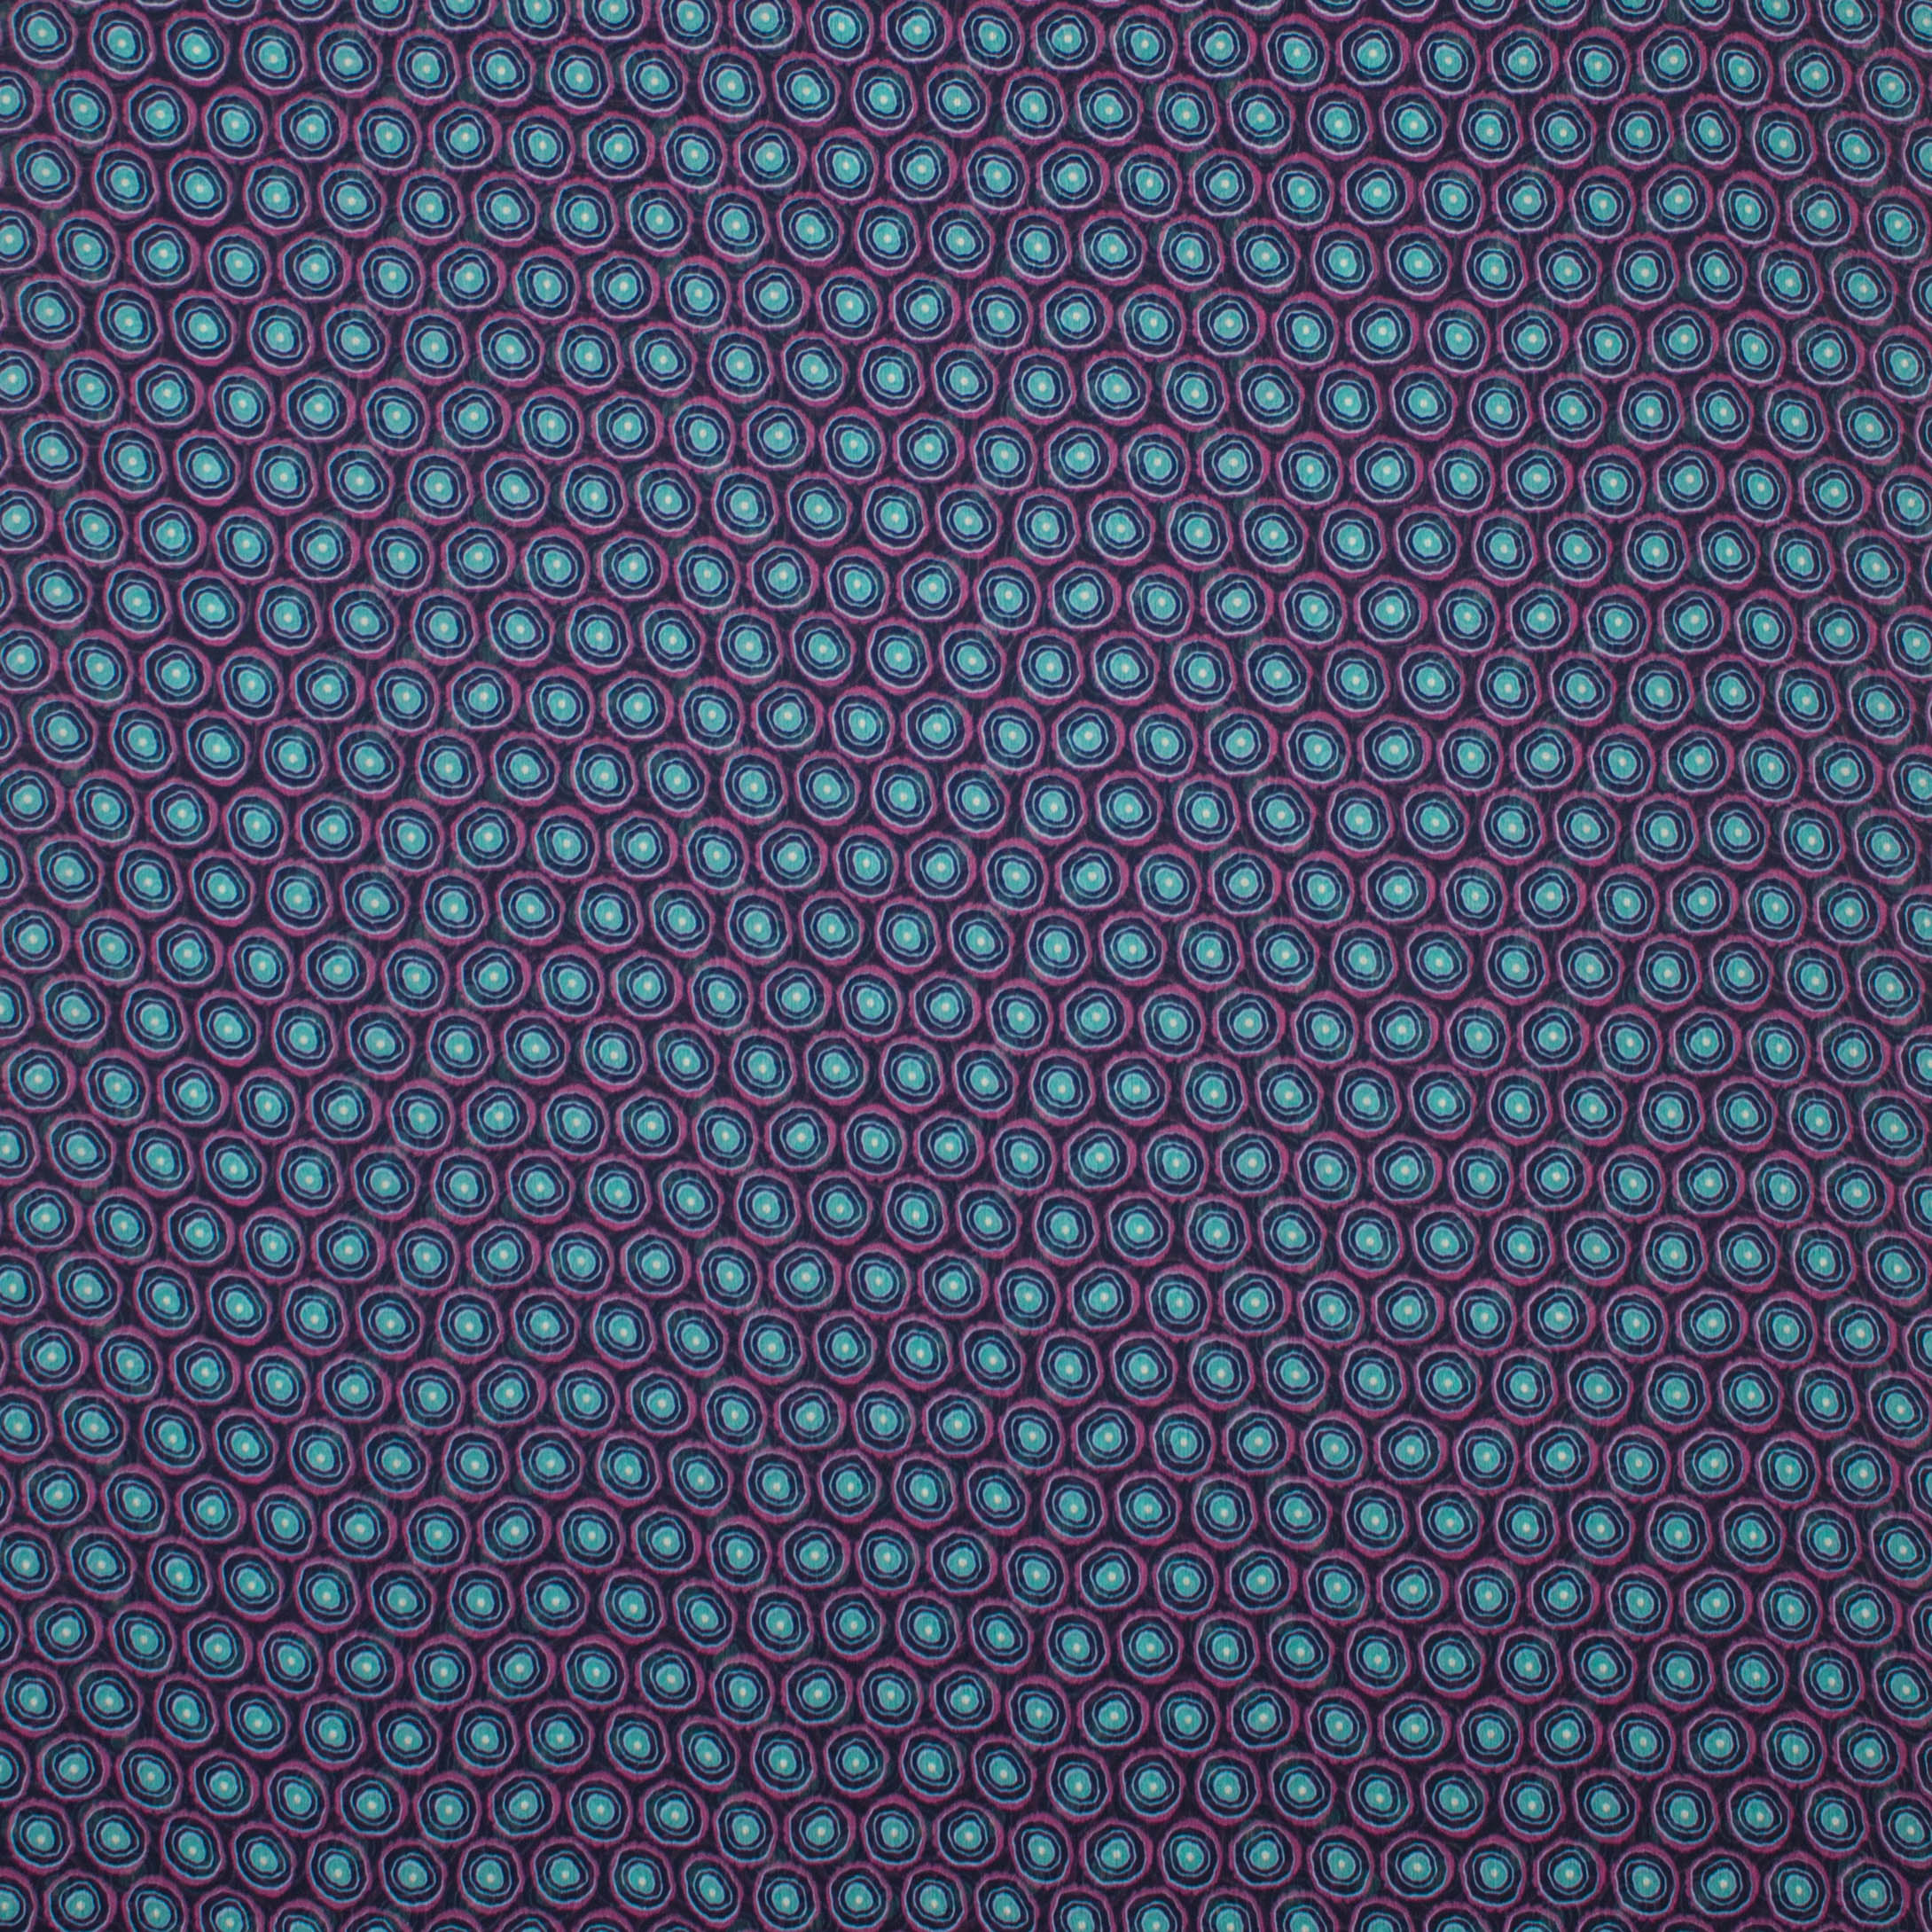 Fijne polyester met bollen motief in paars en blauw